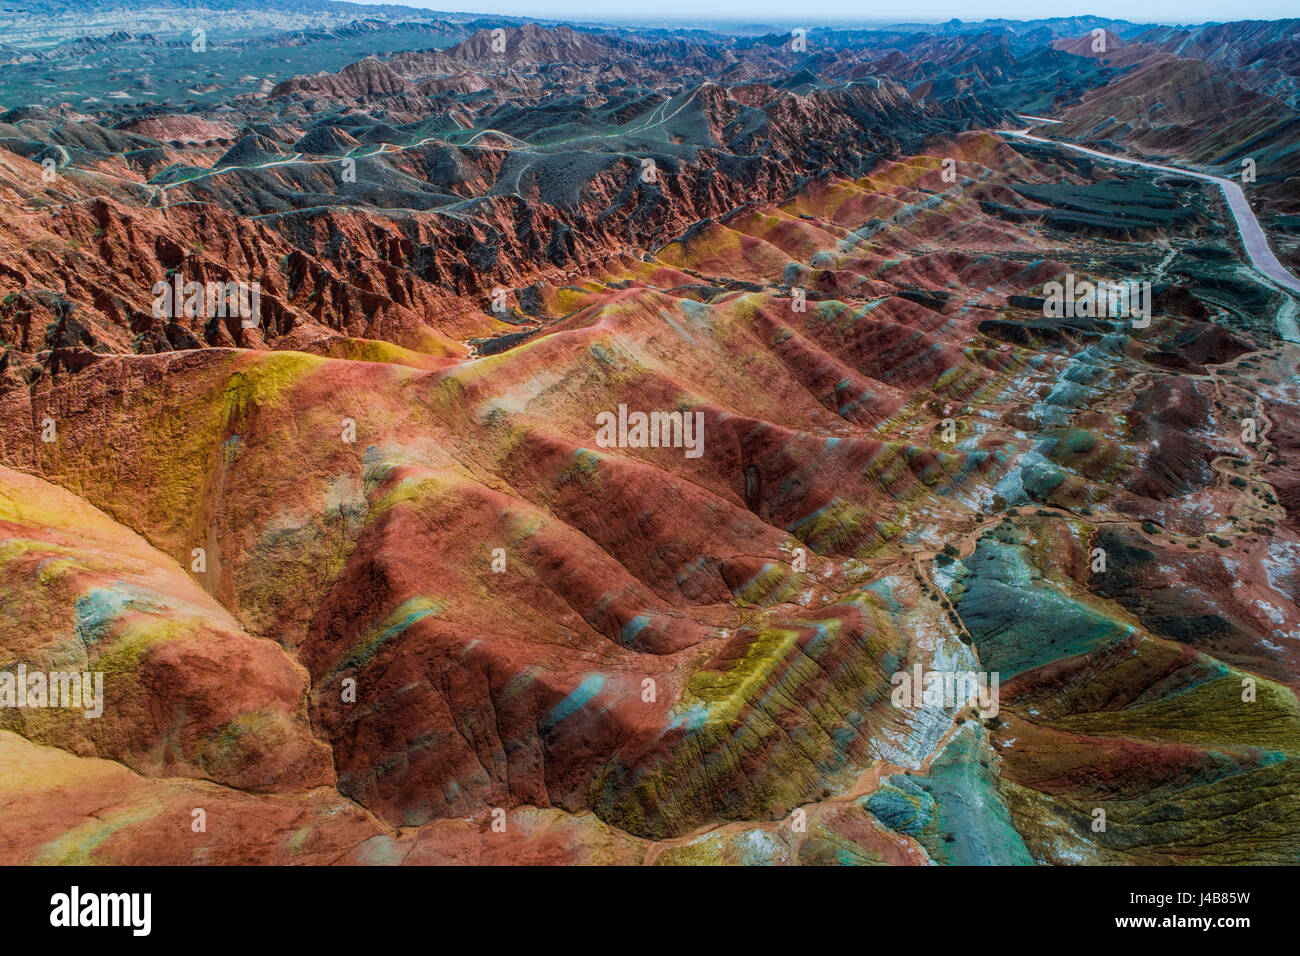 Luftbild auf den regenbogenfarbenen Bergen von Zhangye Danxia Landform geologischen Park in der Provinz Gansu, China, Mai 2017 Stockfoto